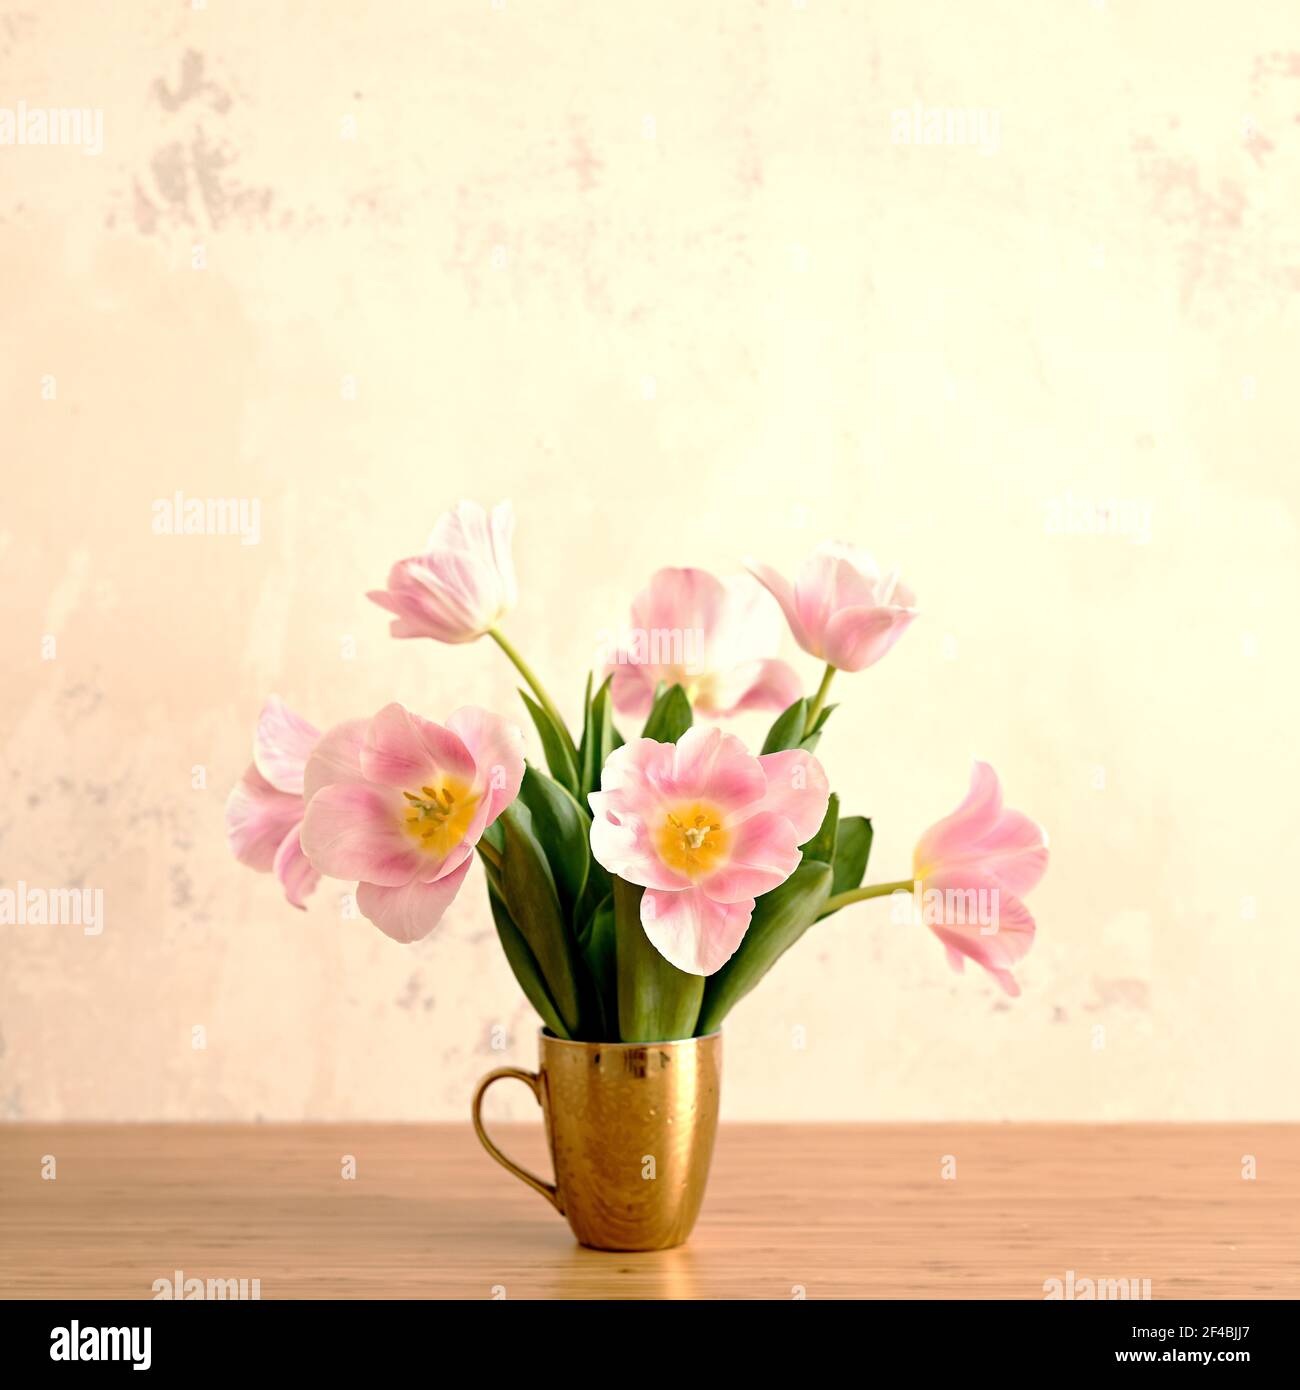 Sommer-Vibes und Stimmung Bild von Bouquet von rosa Tulpen In goldenem Becher auf dem Tisch Stockfoto